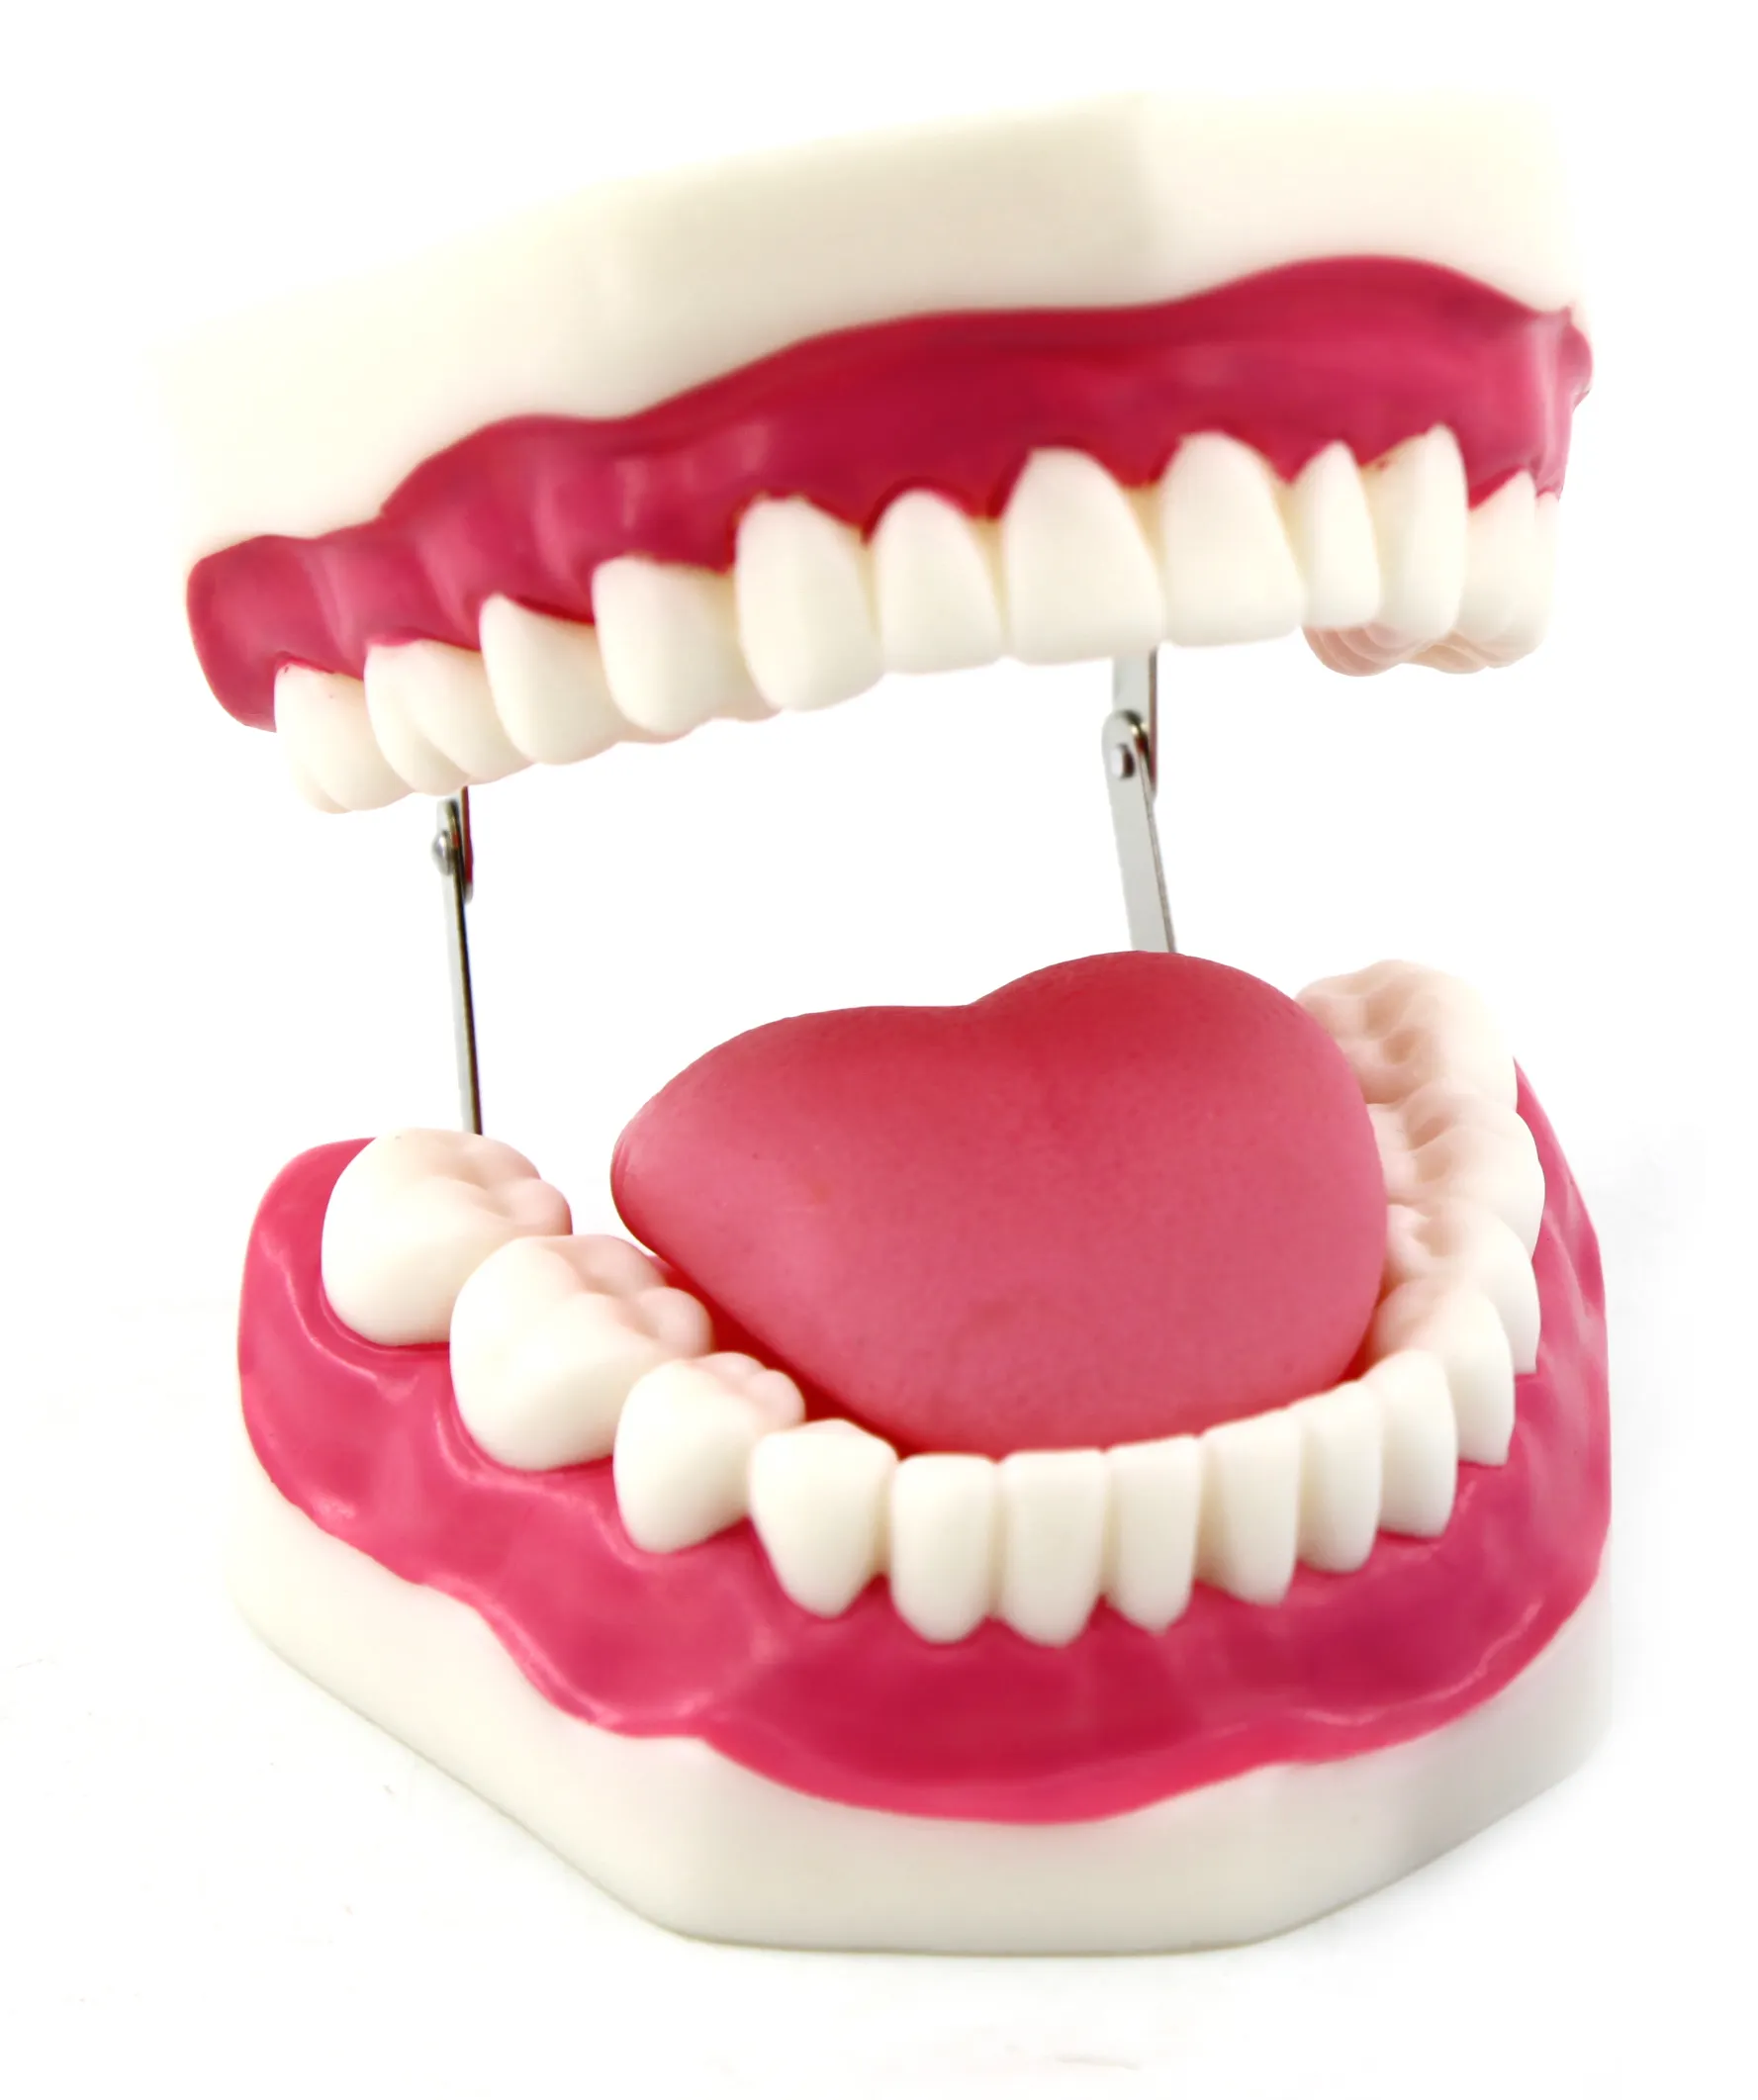 أفضل بيع الأسنان البشري نموذج لشكل الأسنان لدراسة الإنسان الأسنان النظافة مجموعة مع اللسان المولي نموذج لشكل الأسنان